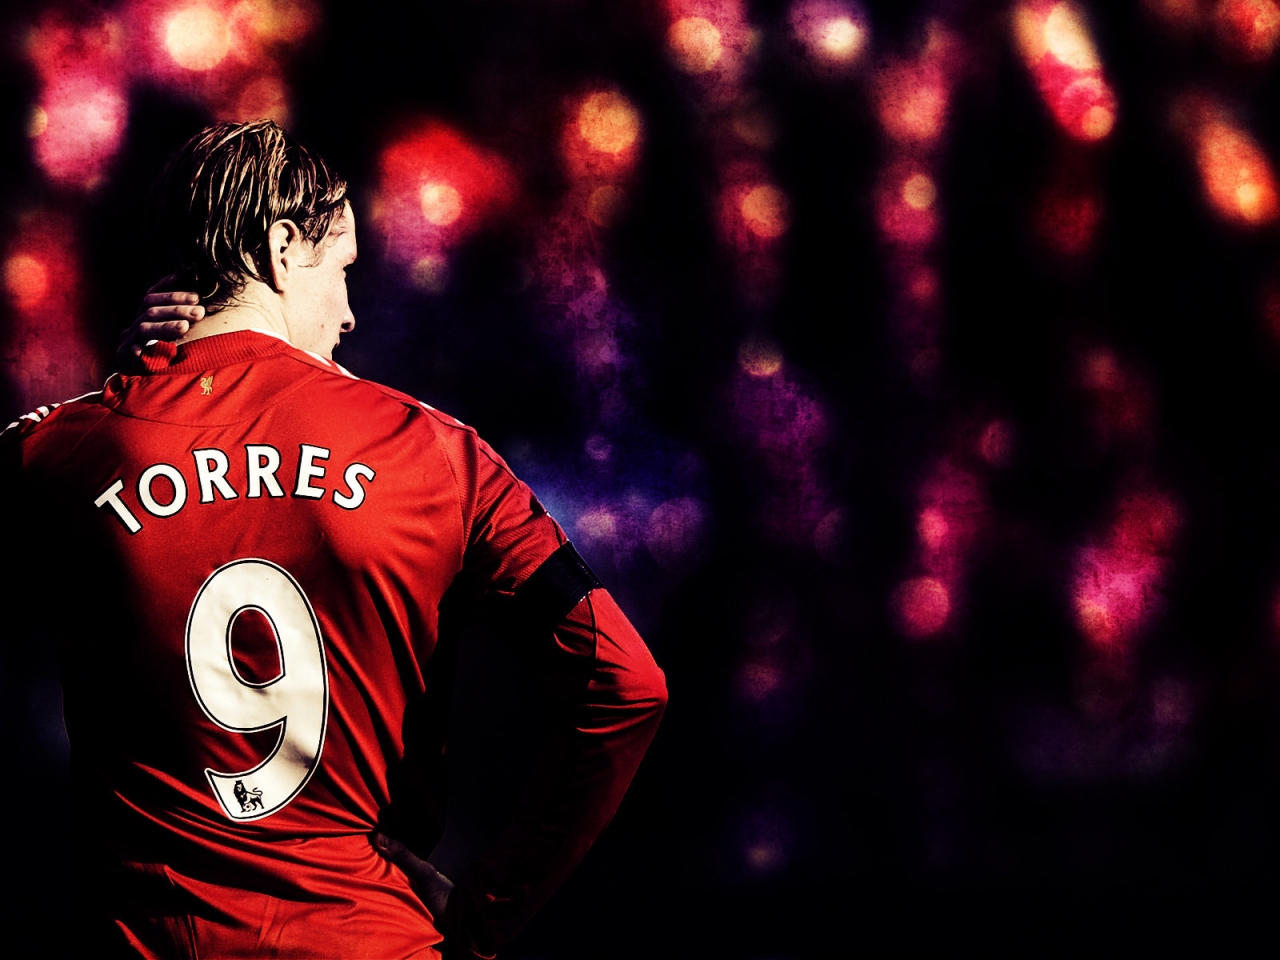 Fernando Torres Back for 1280 x 960 resolution